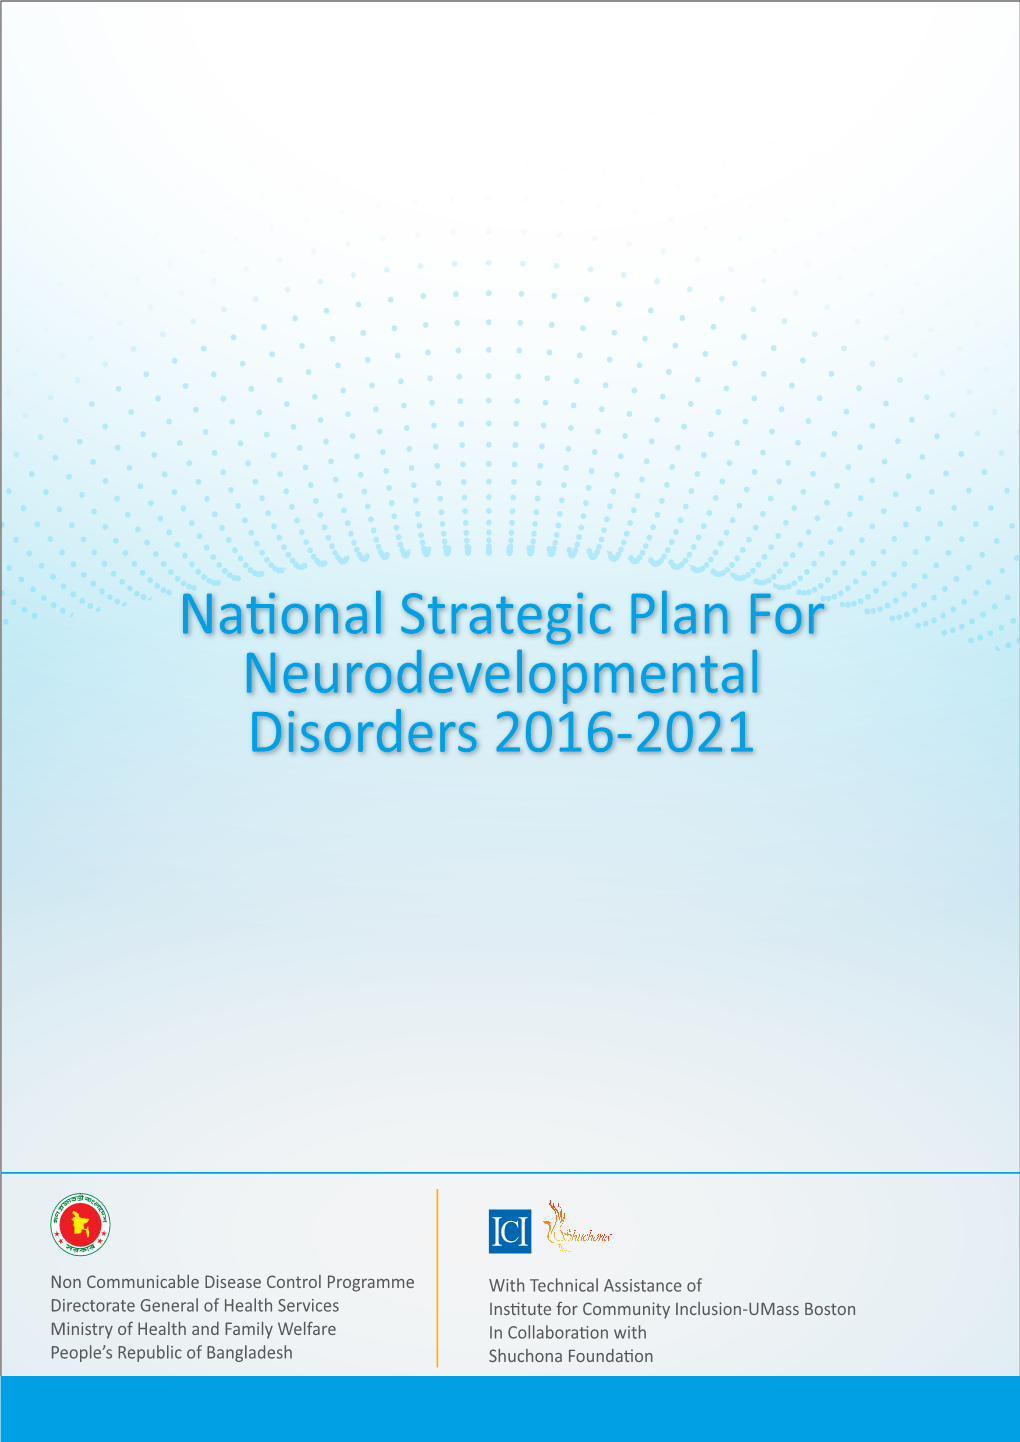 National Strategic Plan for Neurodevelopmental Disorders 2016